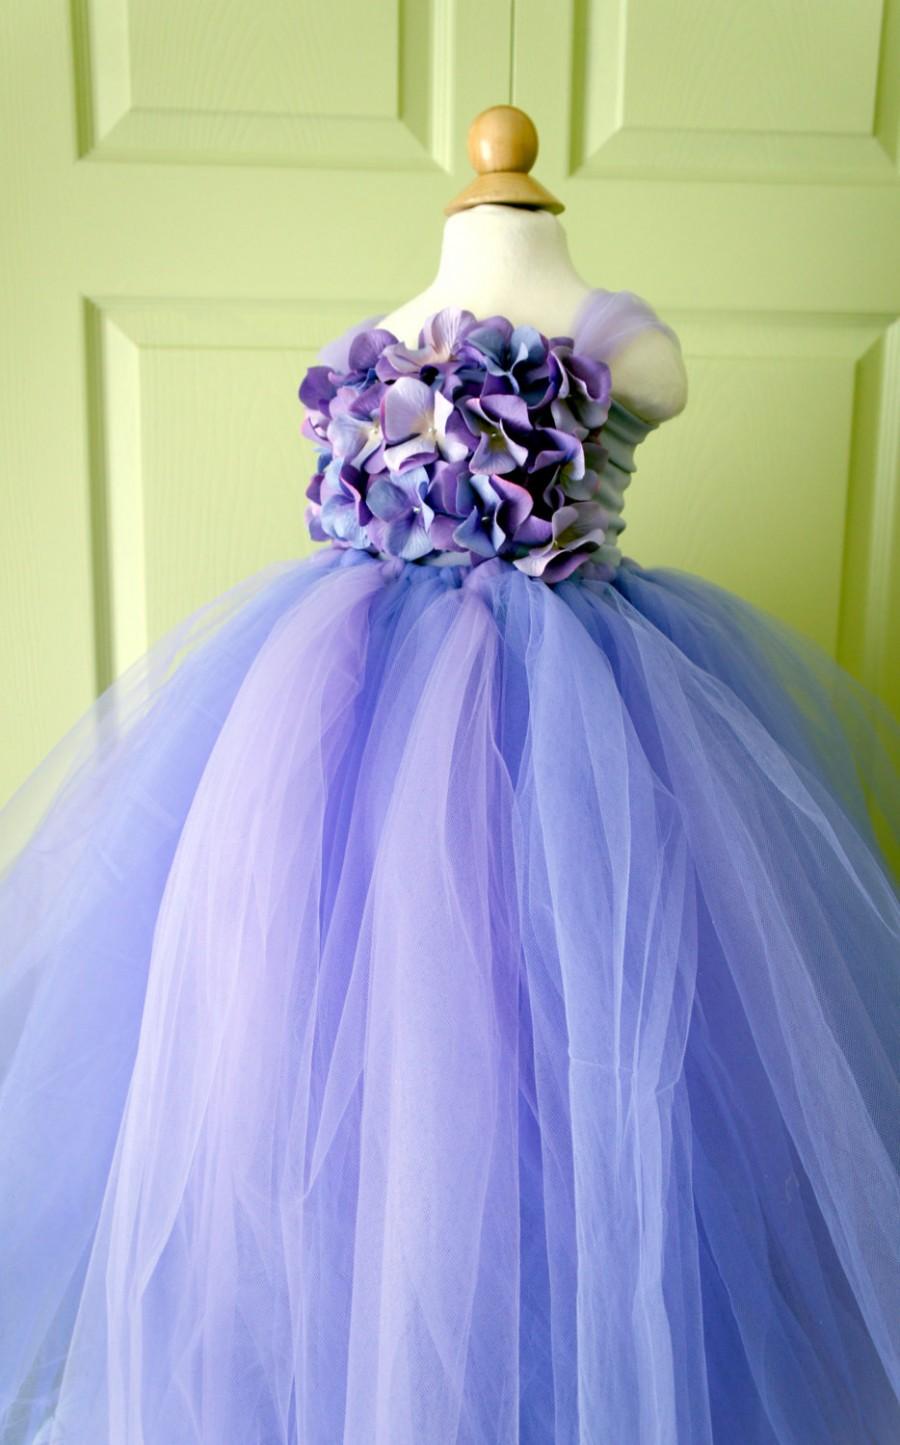 زفاف - Flower Girl Dress, Tutu Dress, Photo Prop, Lavender Purple, Flower Top, Tutu Dress